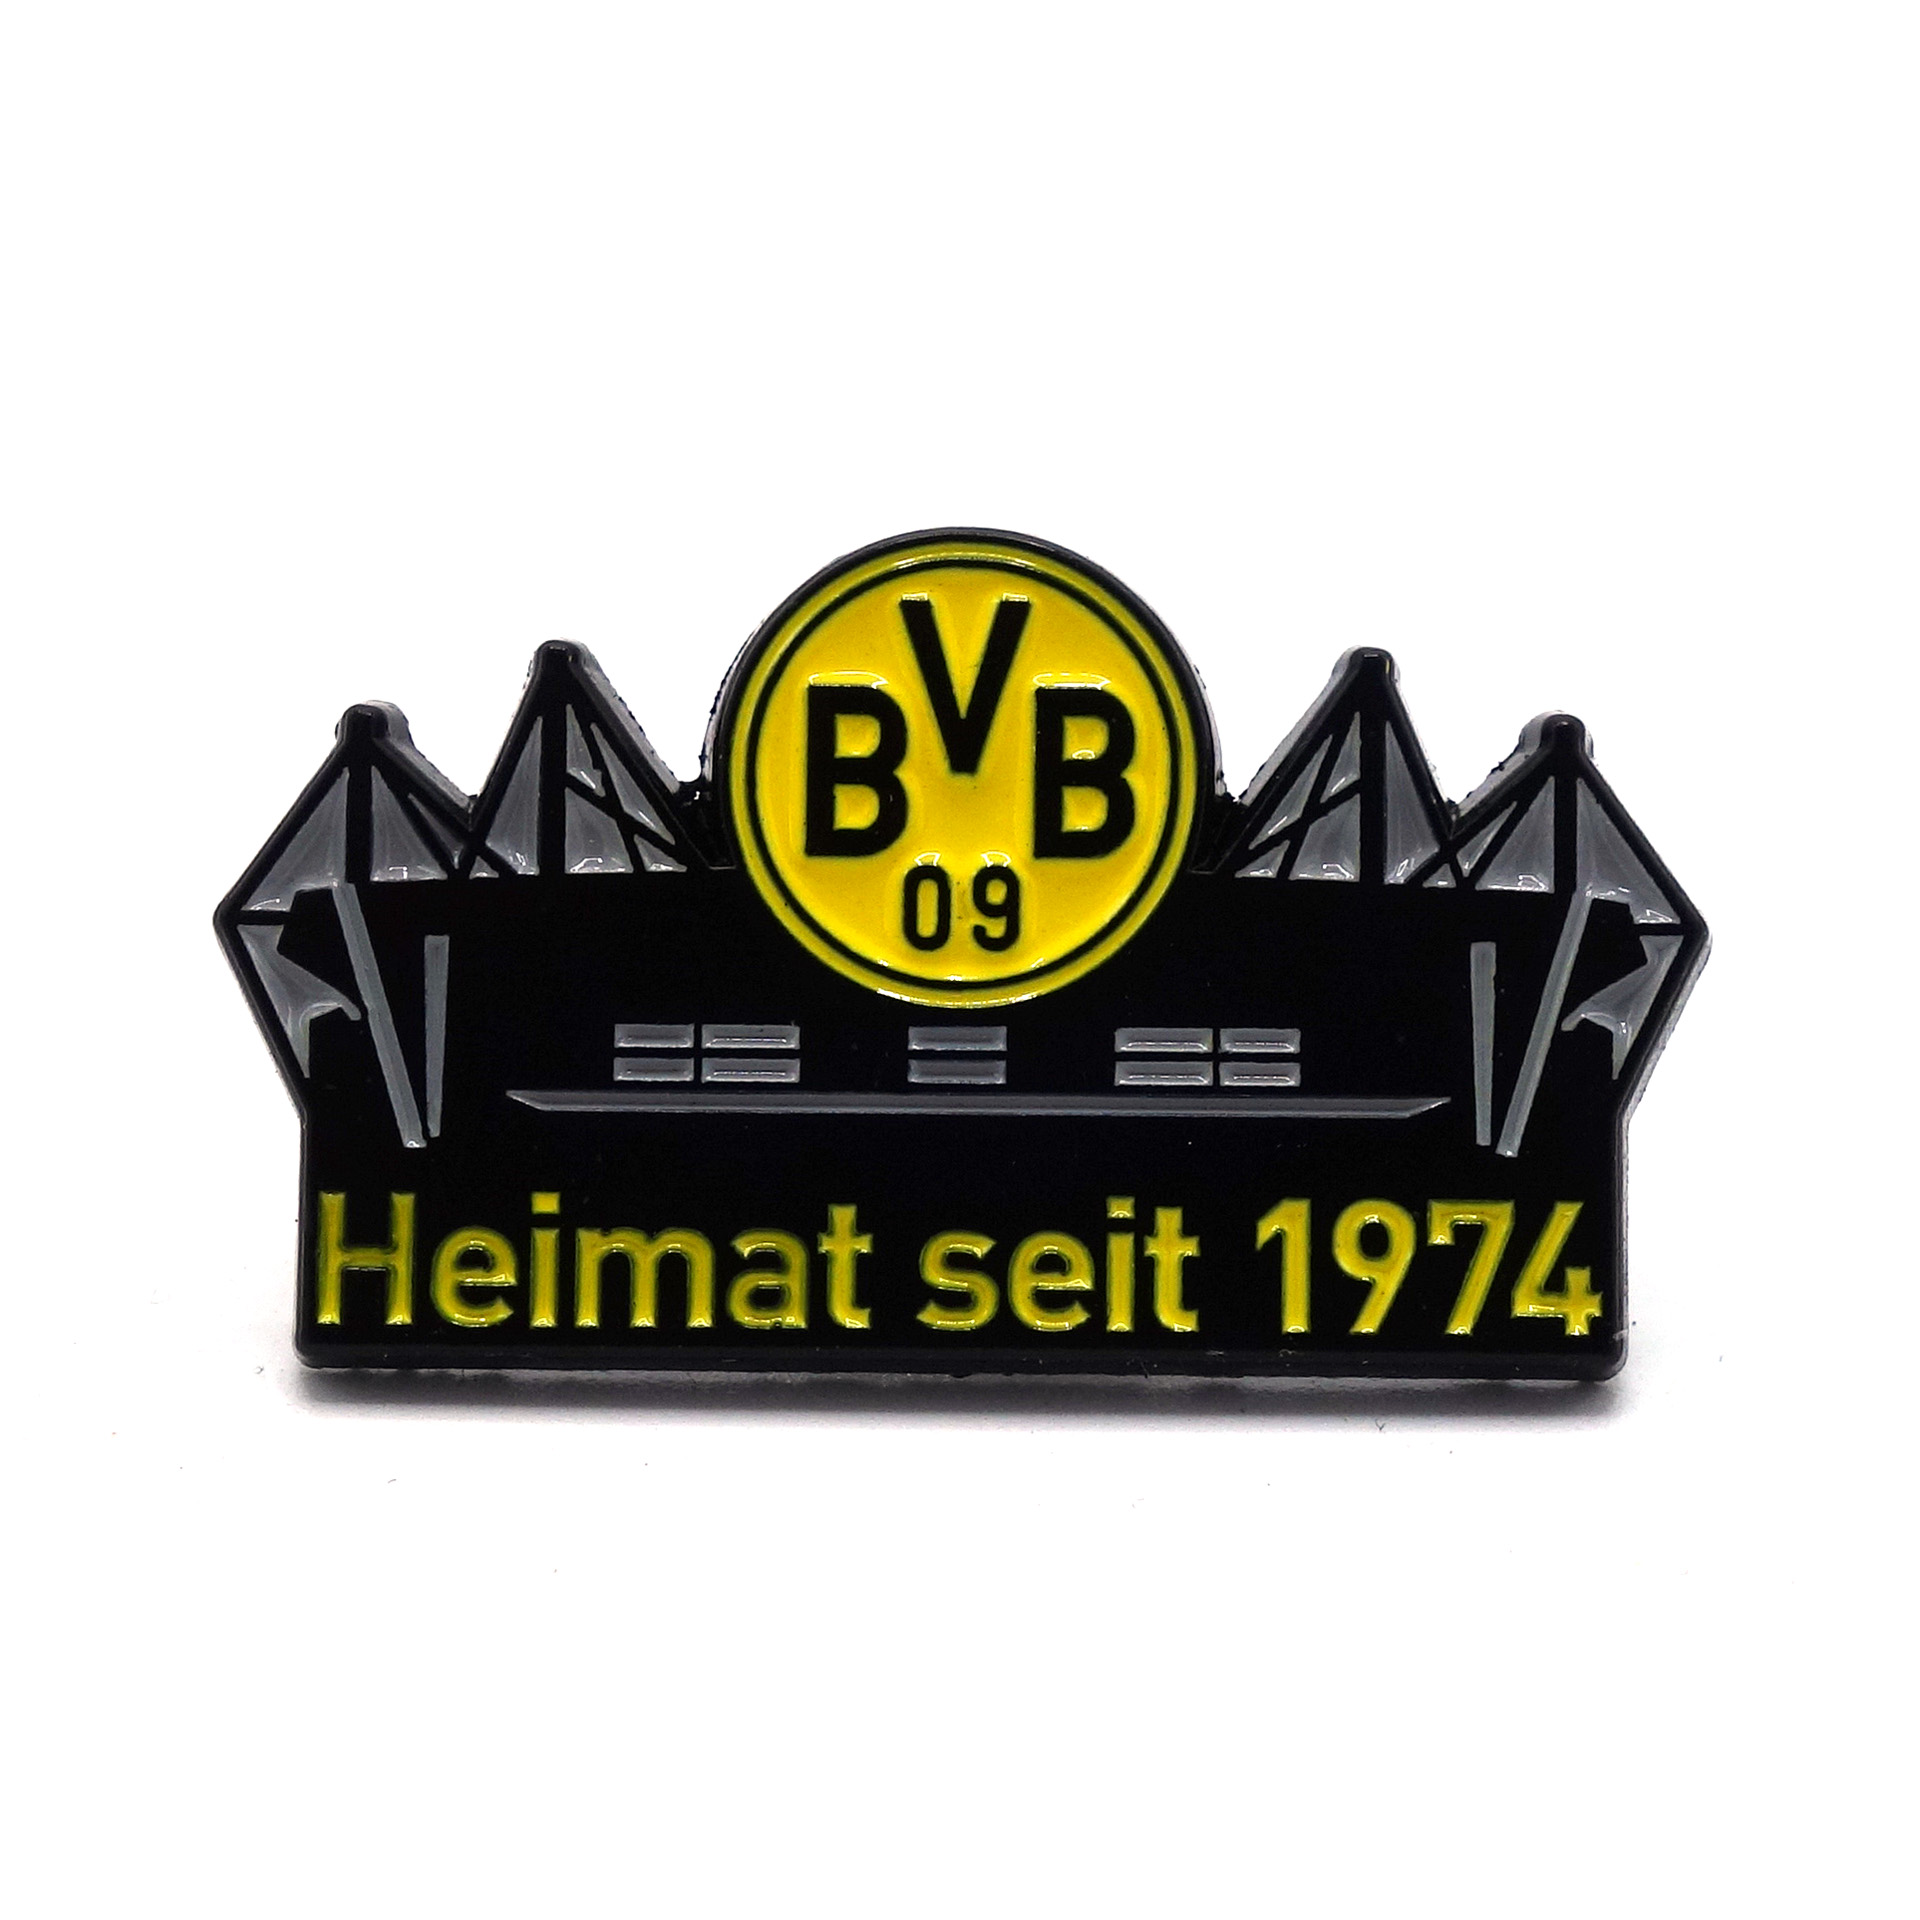 Borussia Dortmund Pin "Westfalenstadion" Heimat seit 1974